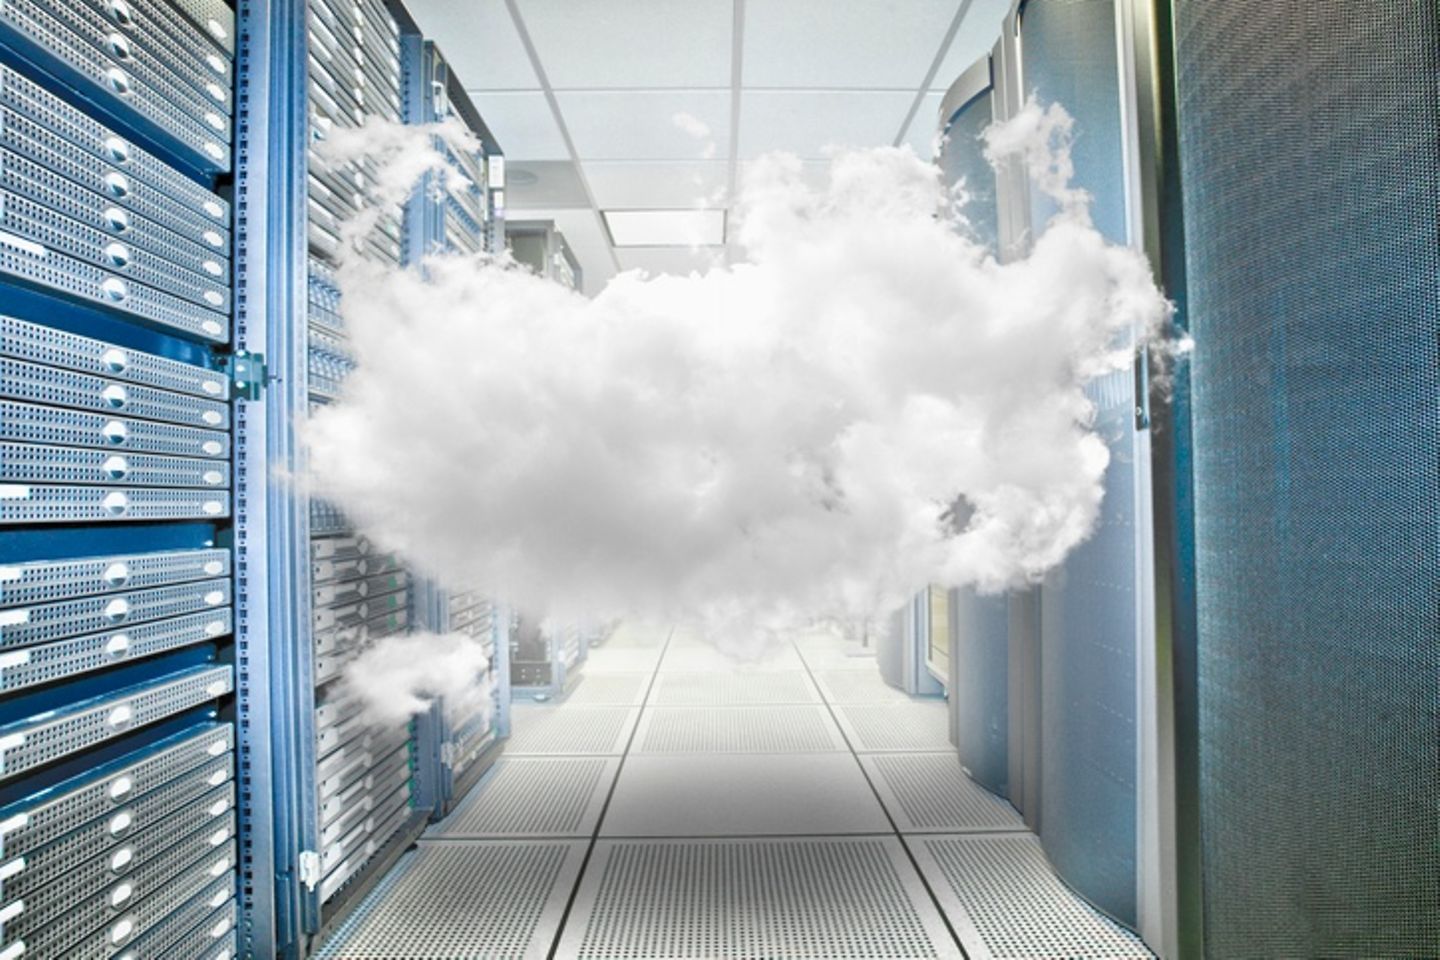 Wolke die zwischen Racks in Serverraum hängt.